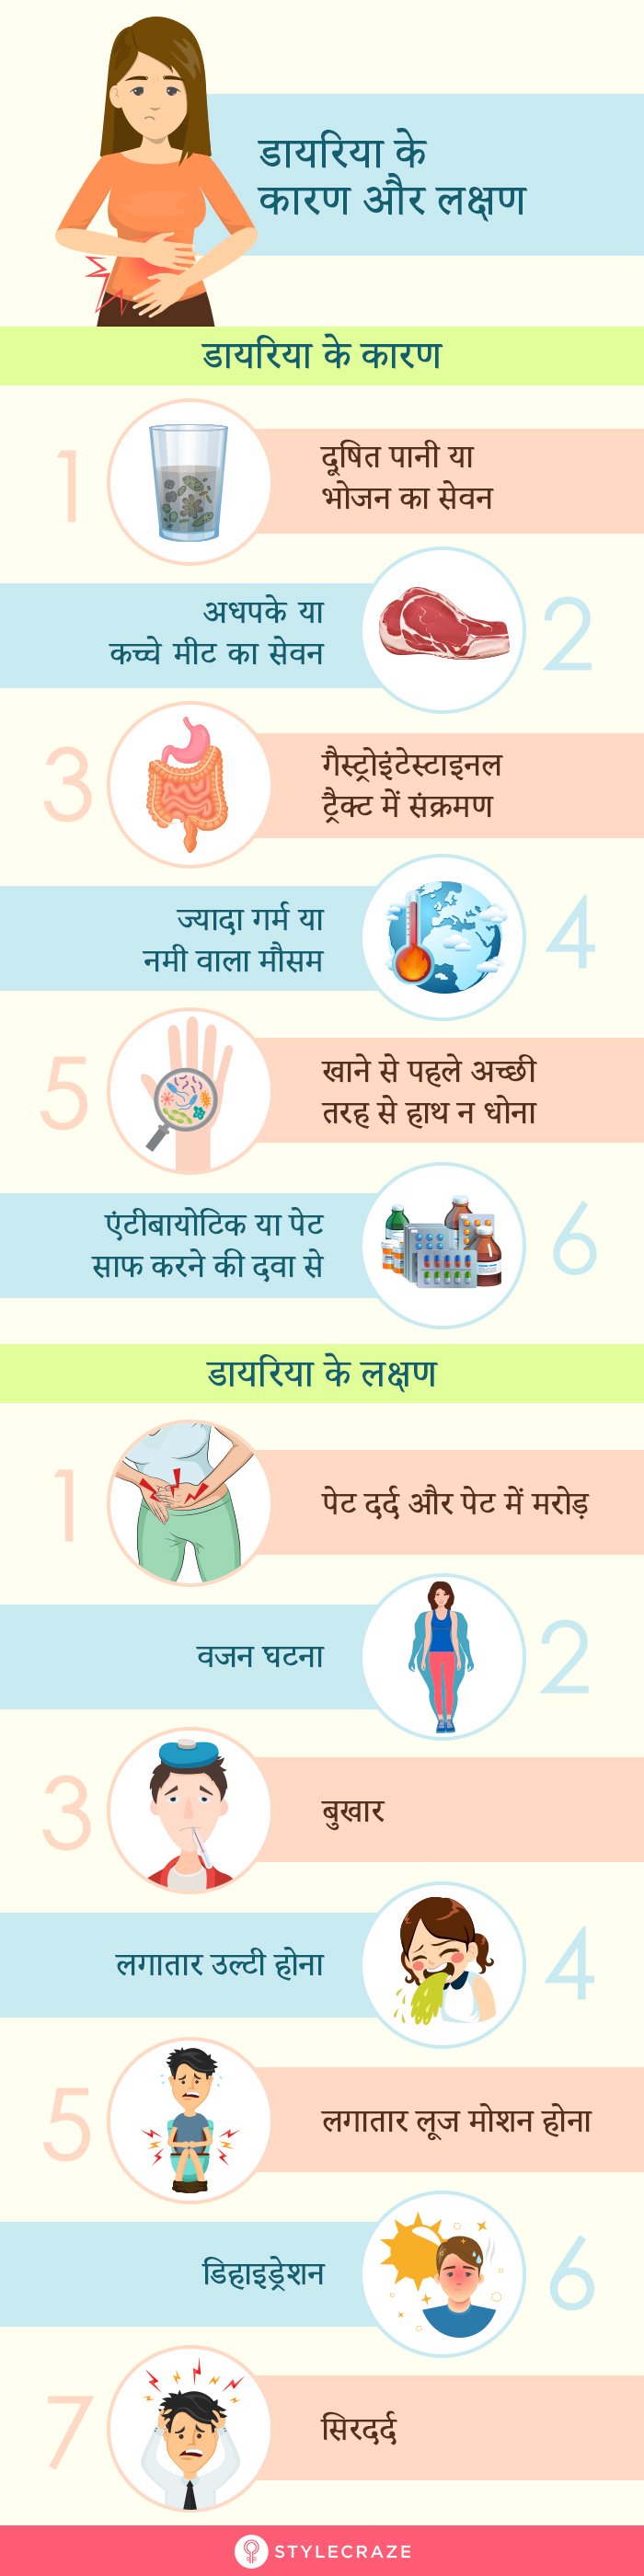 डायरिया के कारण, लक्षण और घरेलू उपाय – Diarrhea Symptoms and Home Remedies in Hindi